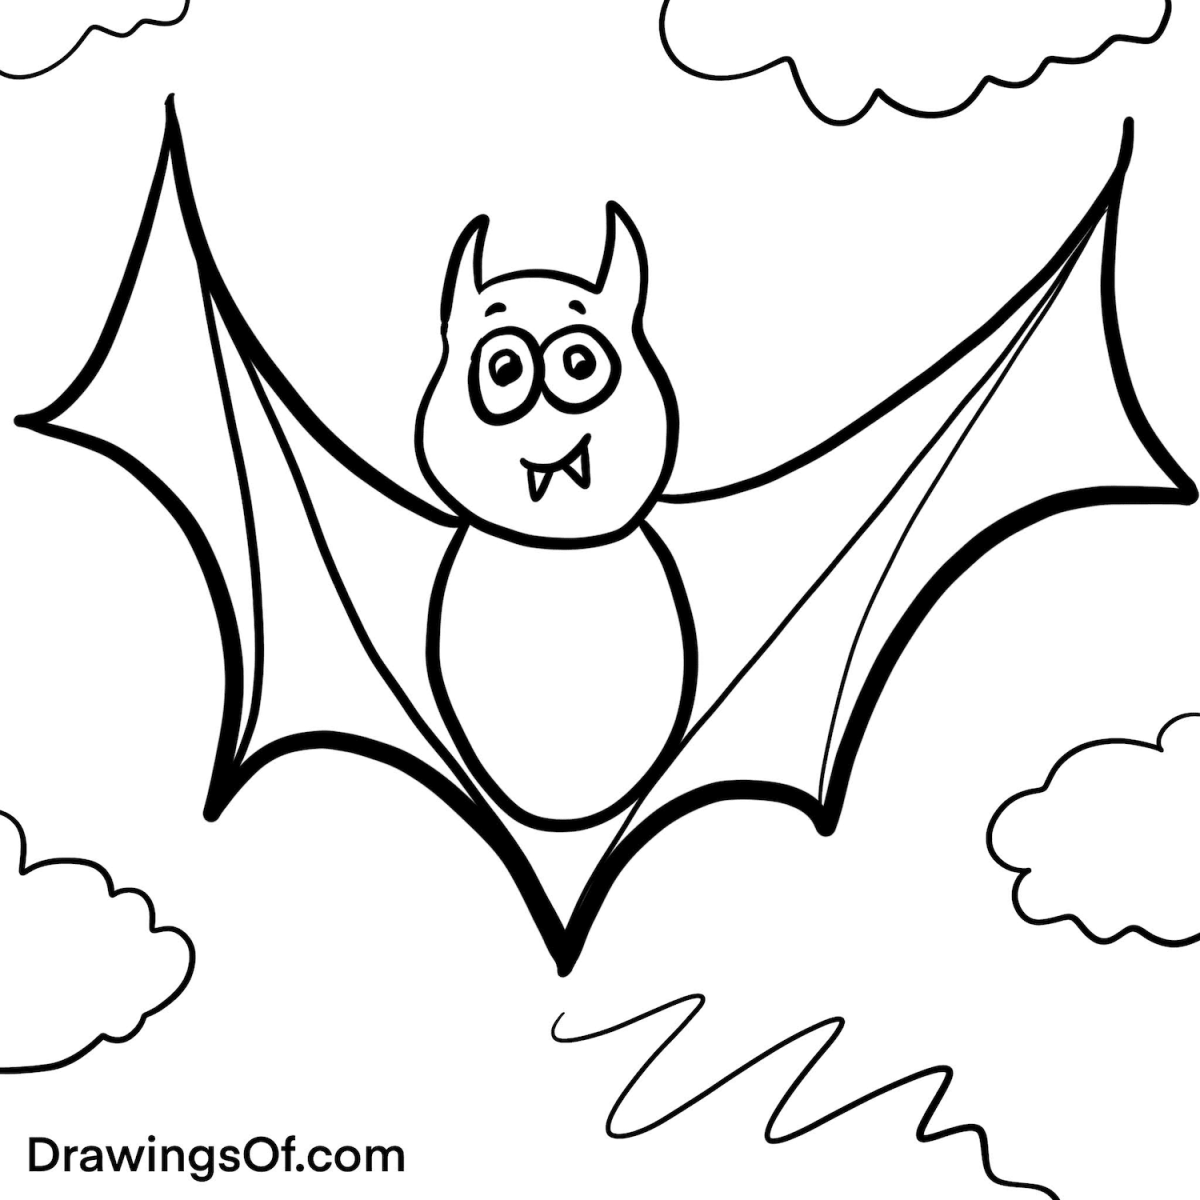 Cute bat drawing easy cartoon instructions